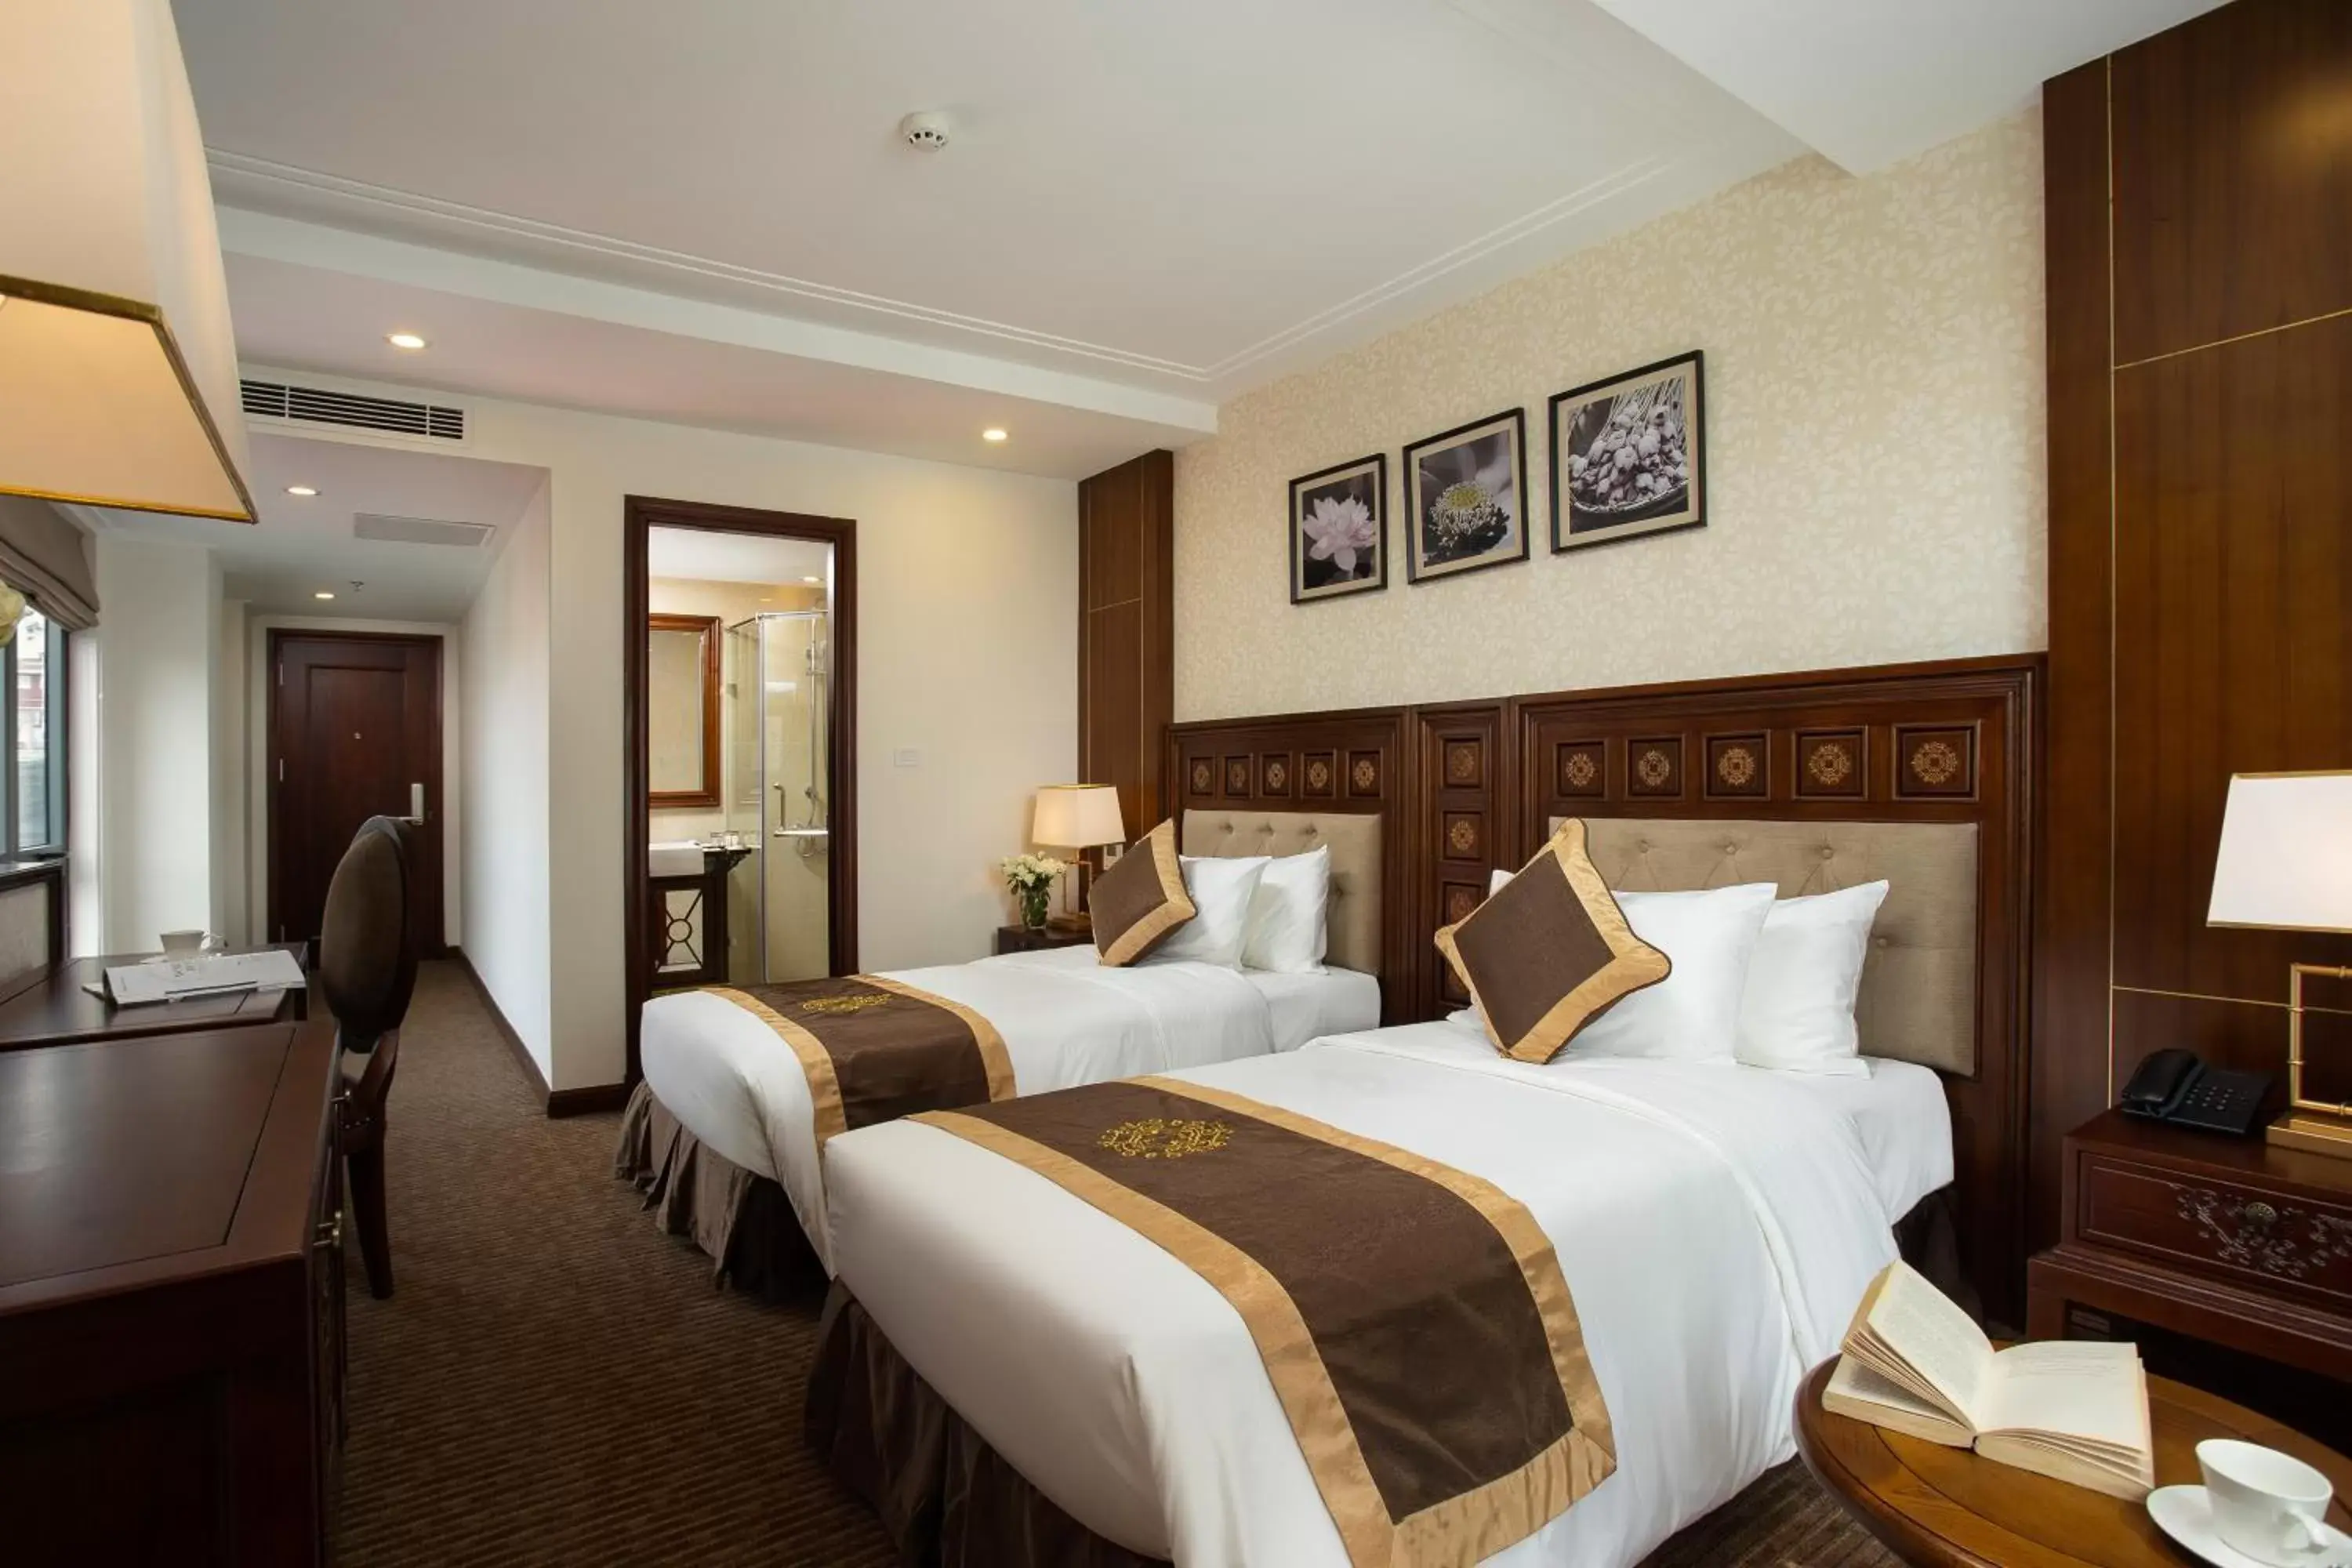 Shower, Bed in Rex Hanoi Hotel